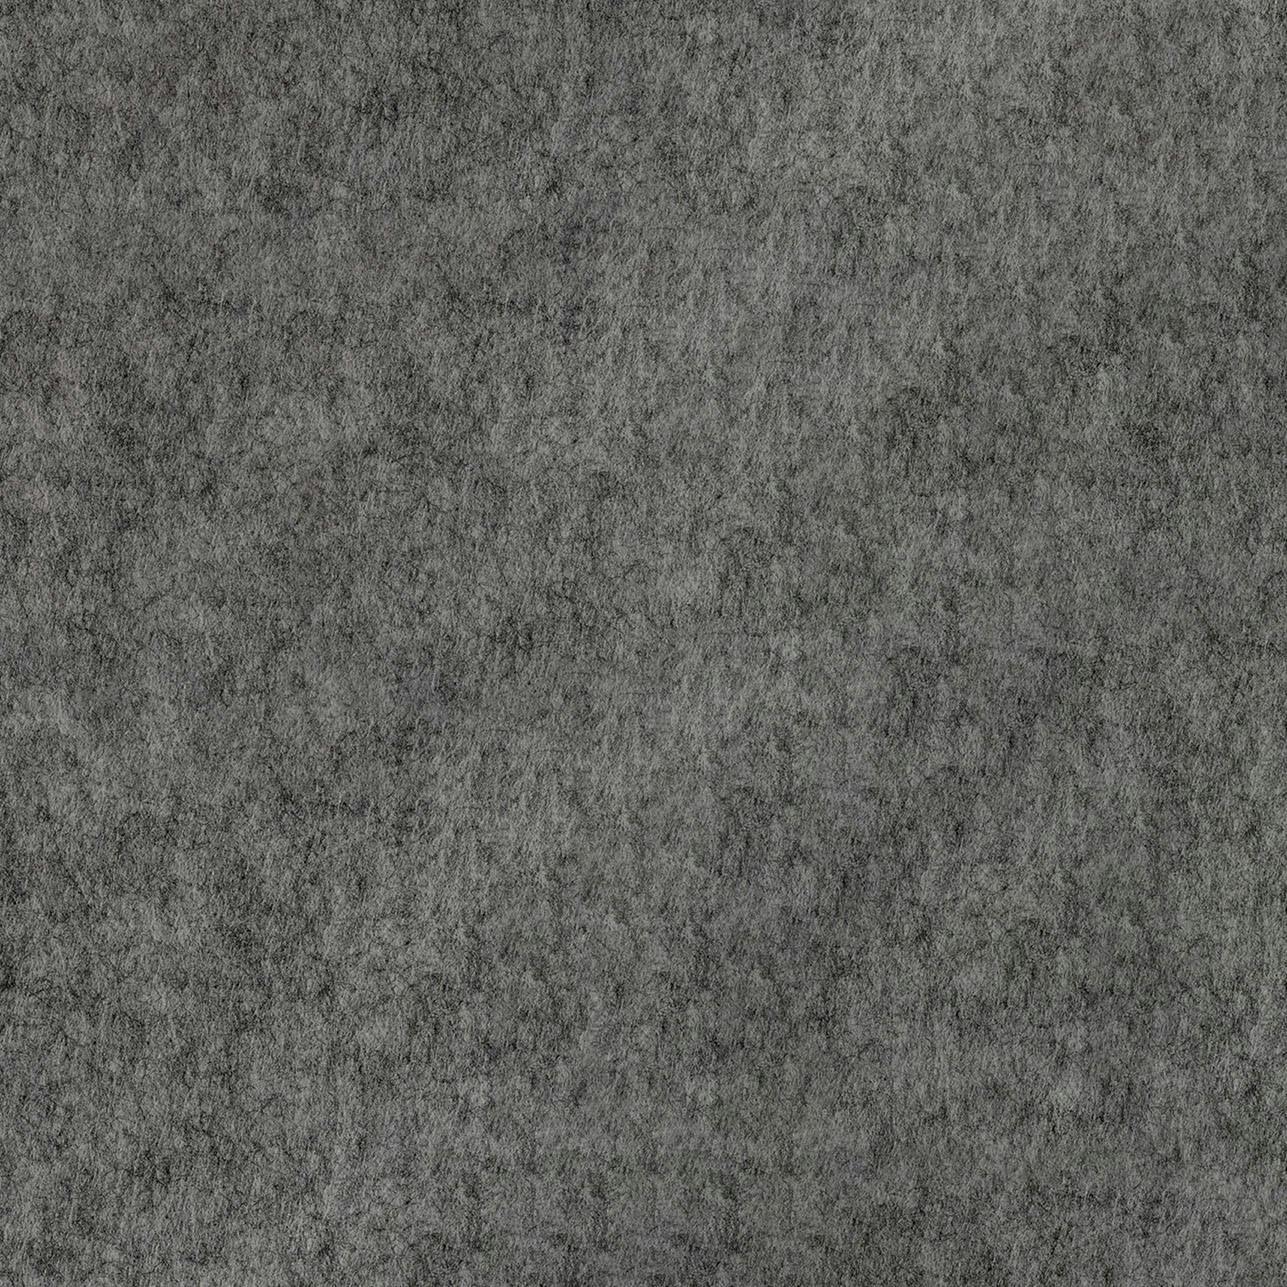 PET-vilt 25 mm dik in kleur Silver Grey